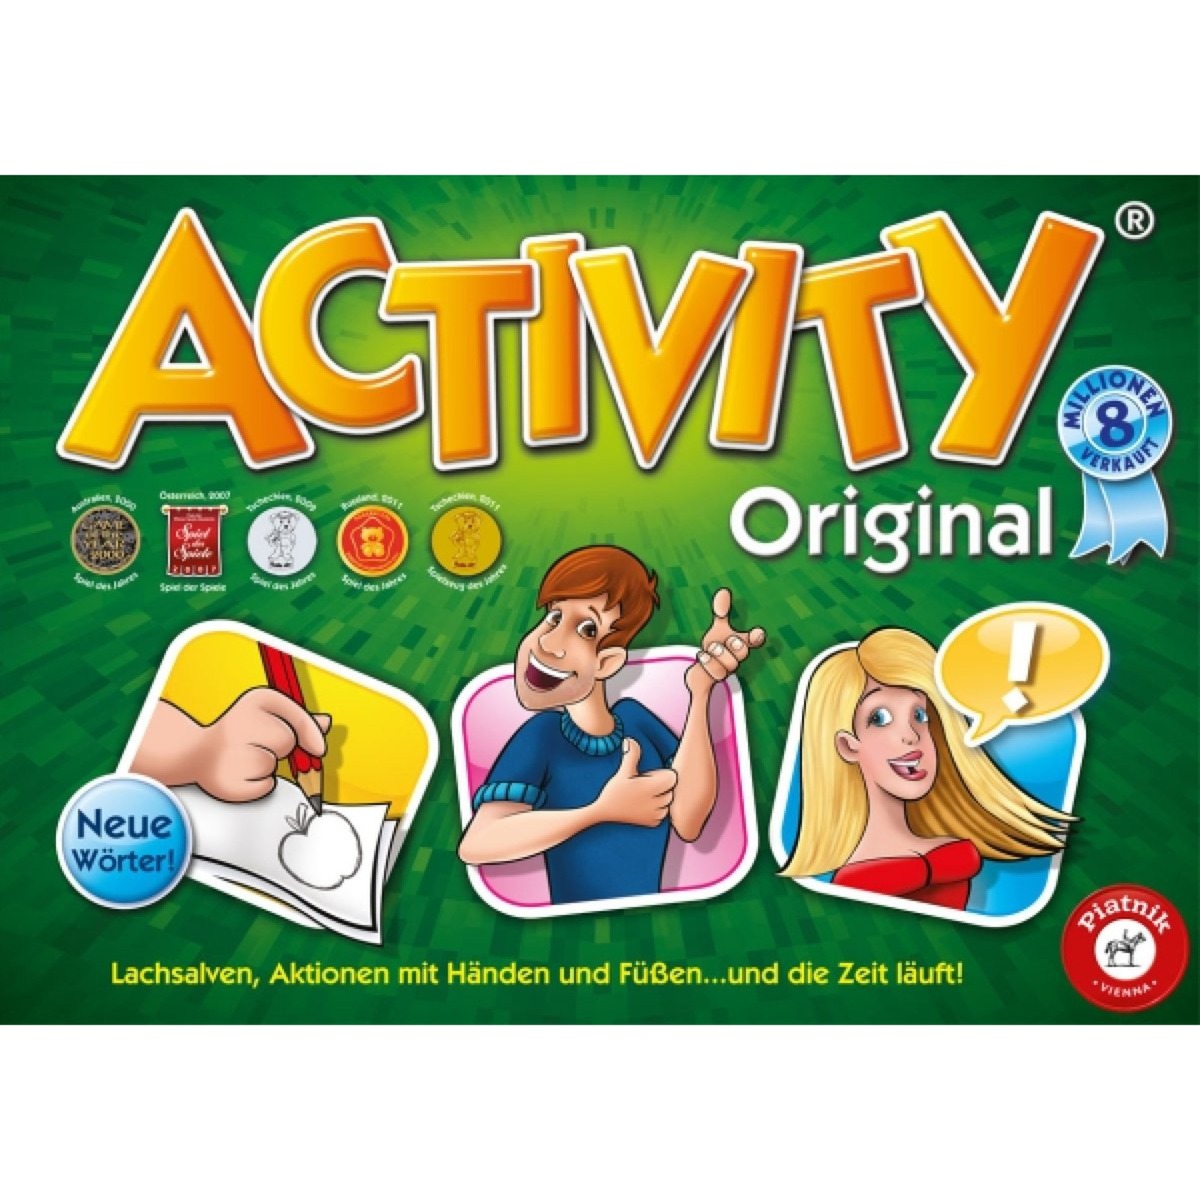 Image of Alternate - Activity Original, Partyspiel online einkaufen bei Alternate